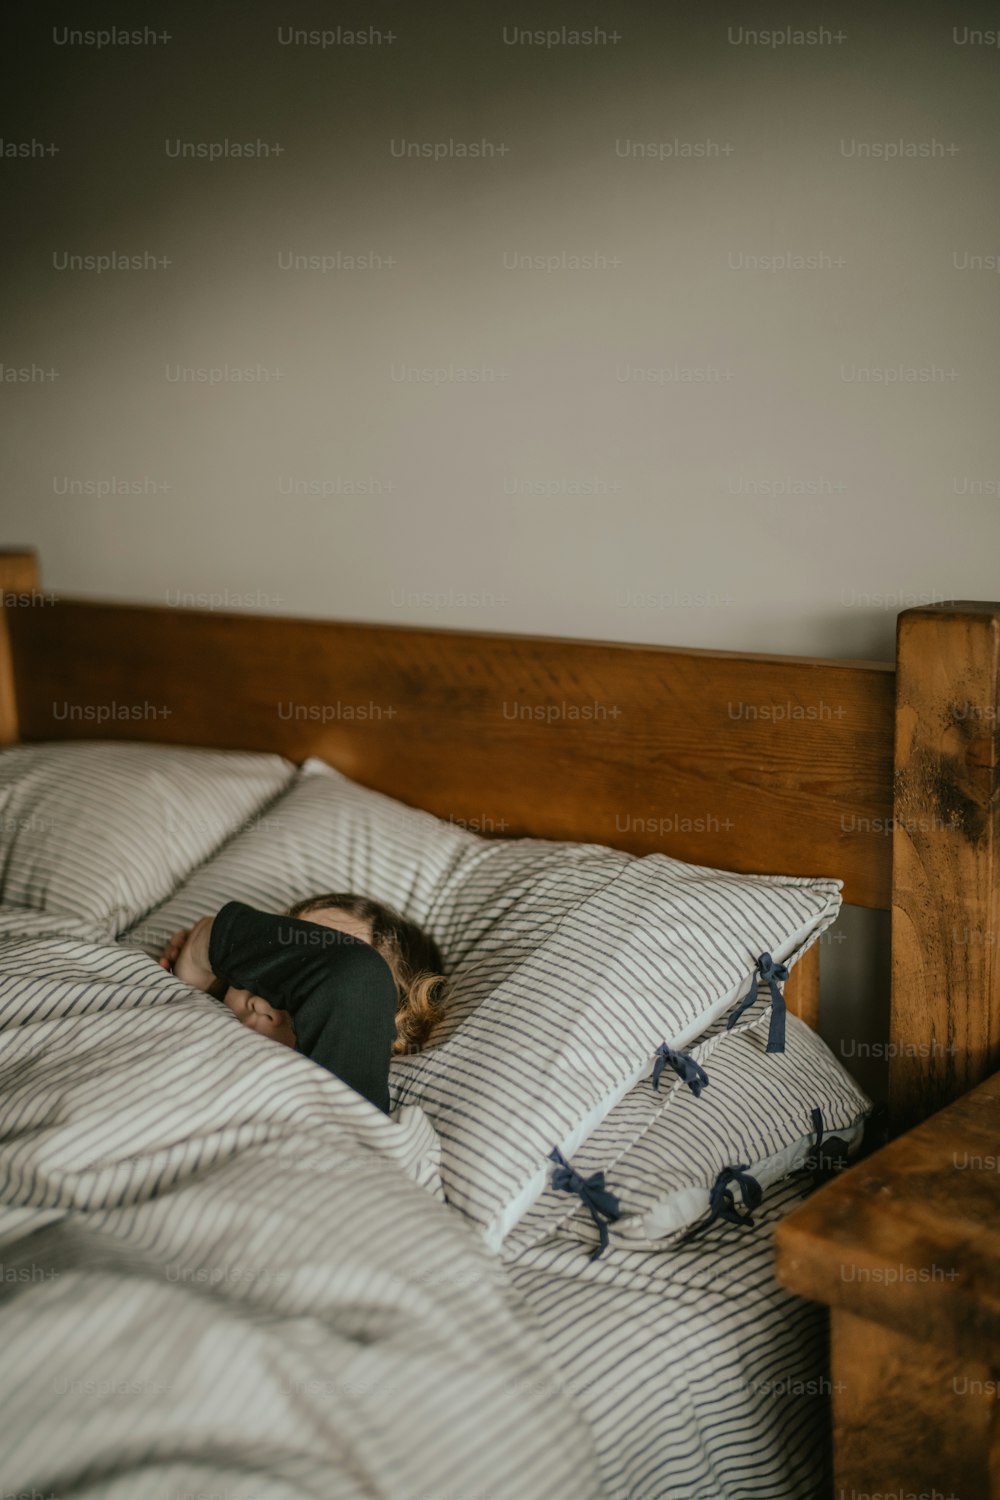 une personne dormant sur un lit